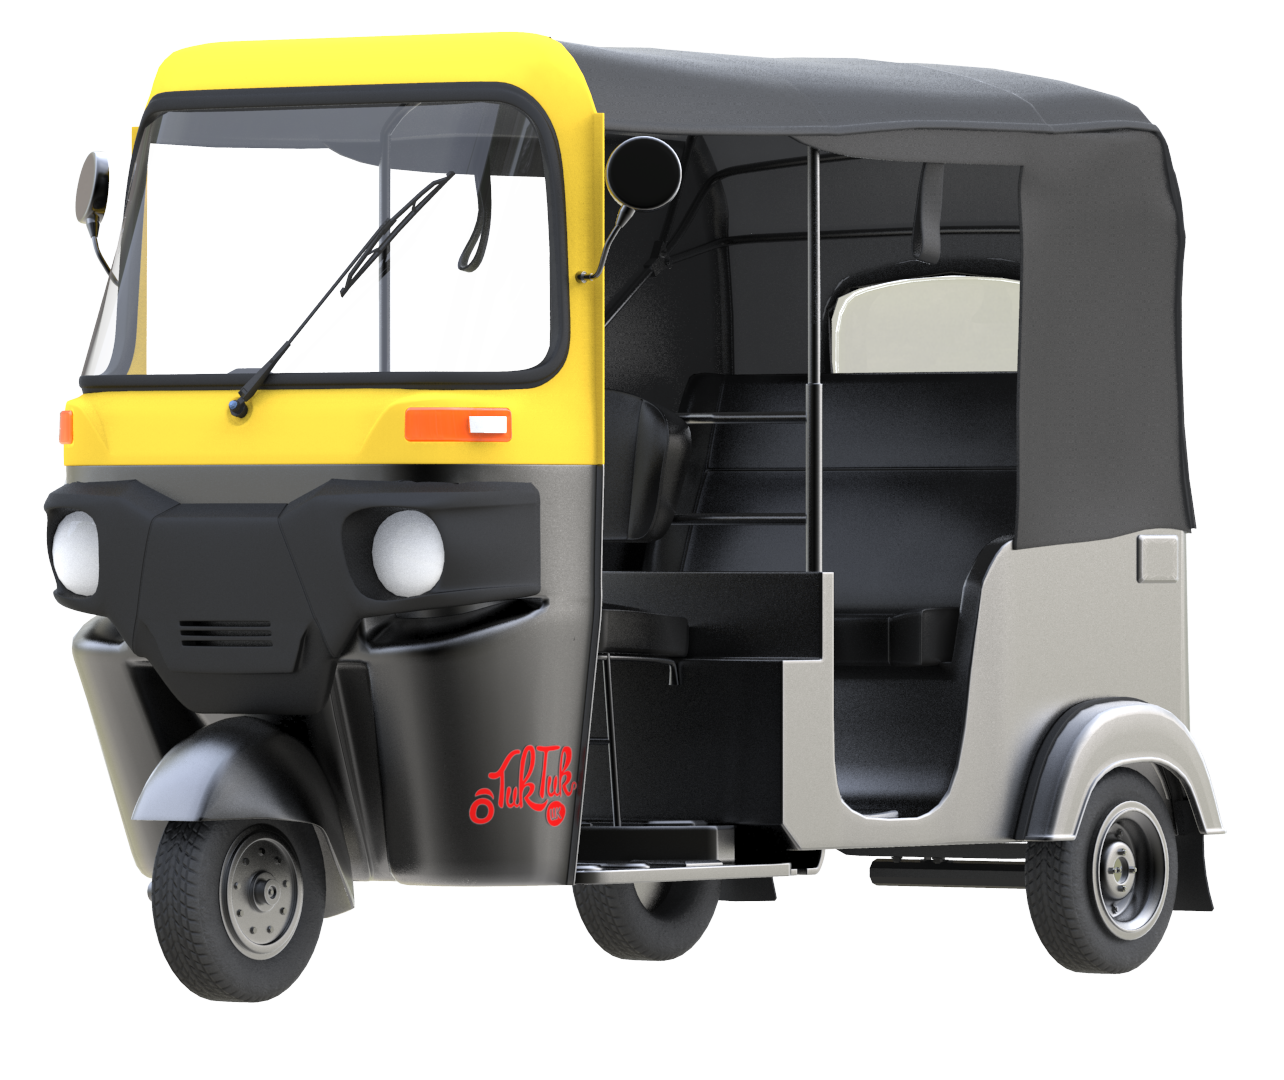 Tuk Tuk Png Clipart - Auto Rickshaw, Transparent background PNG HD thumbnail